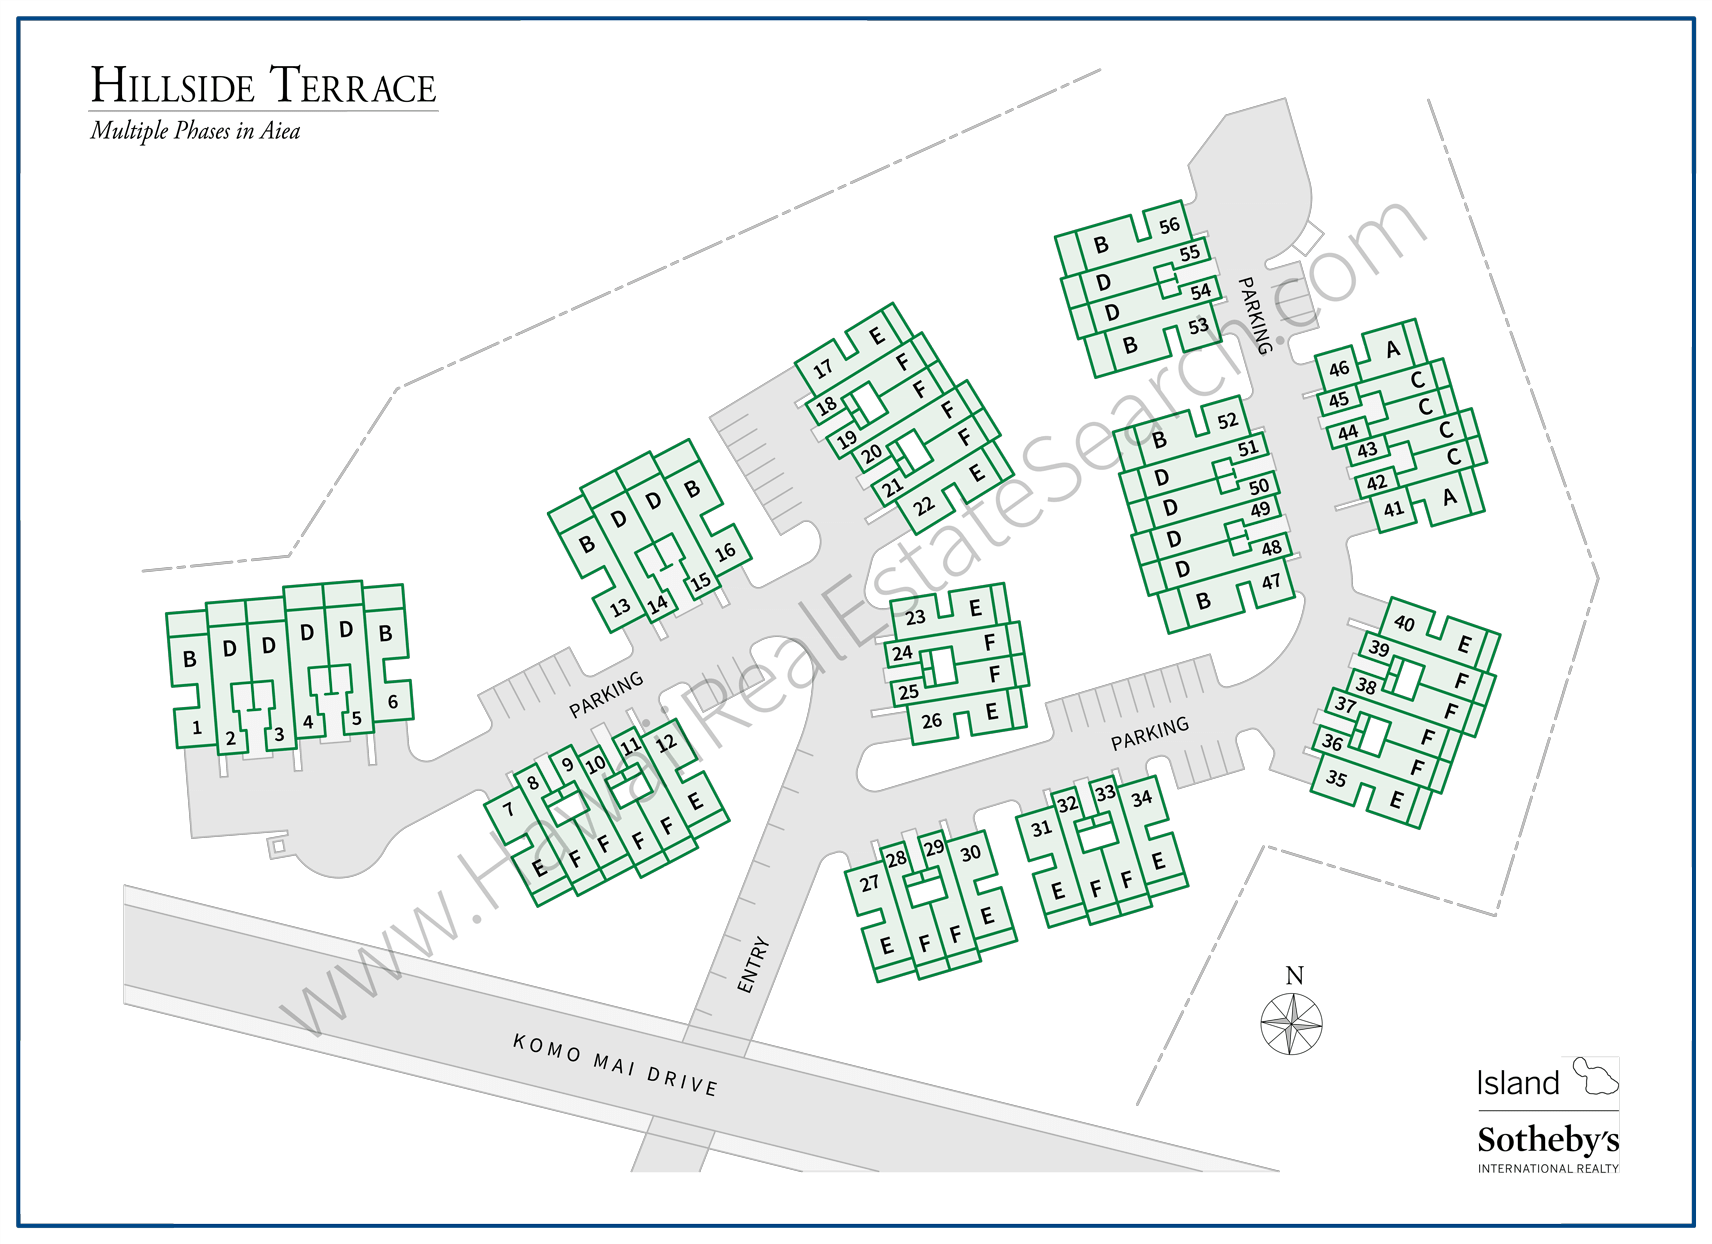 Hillside Terrace Property Map